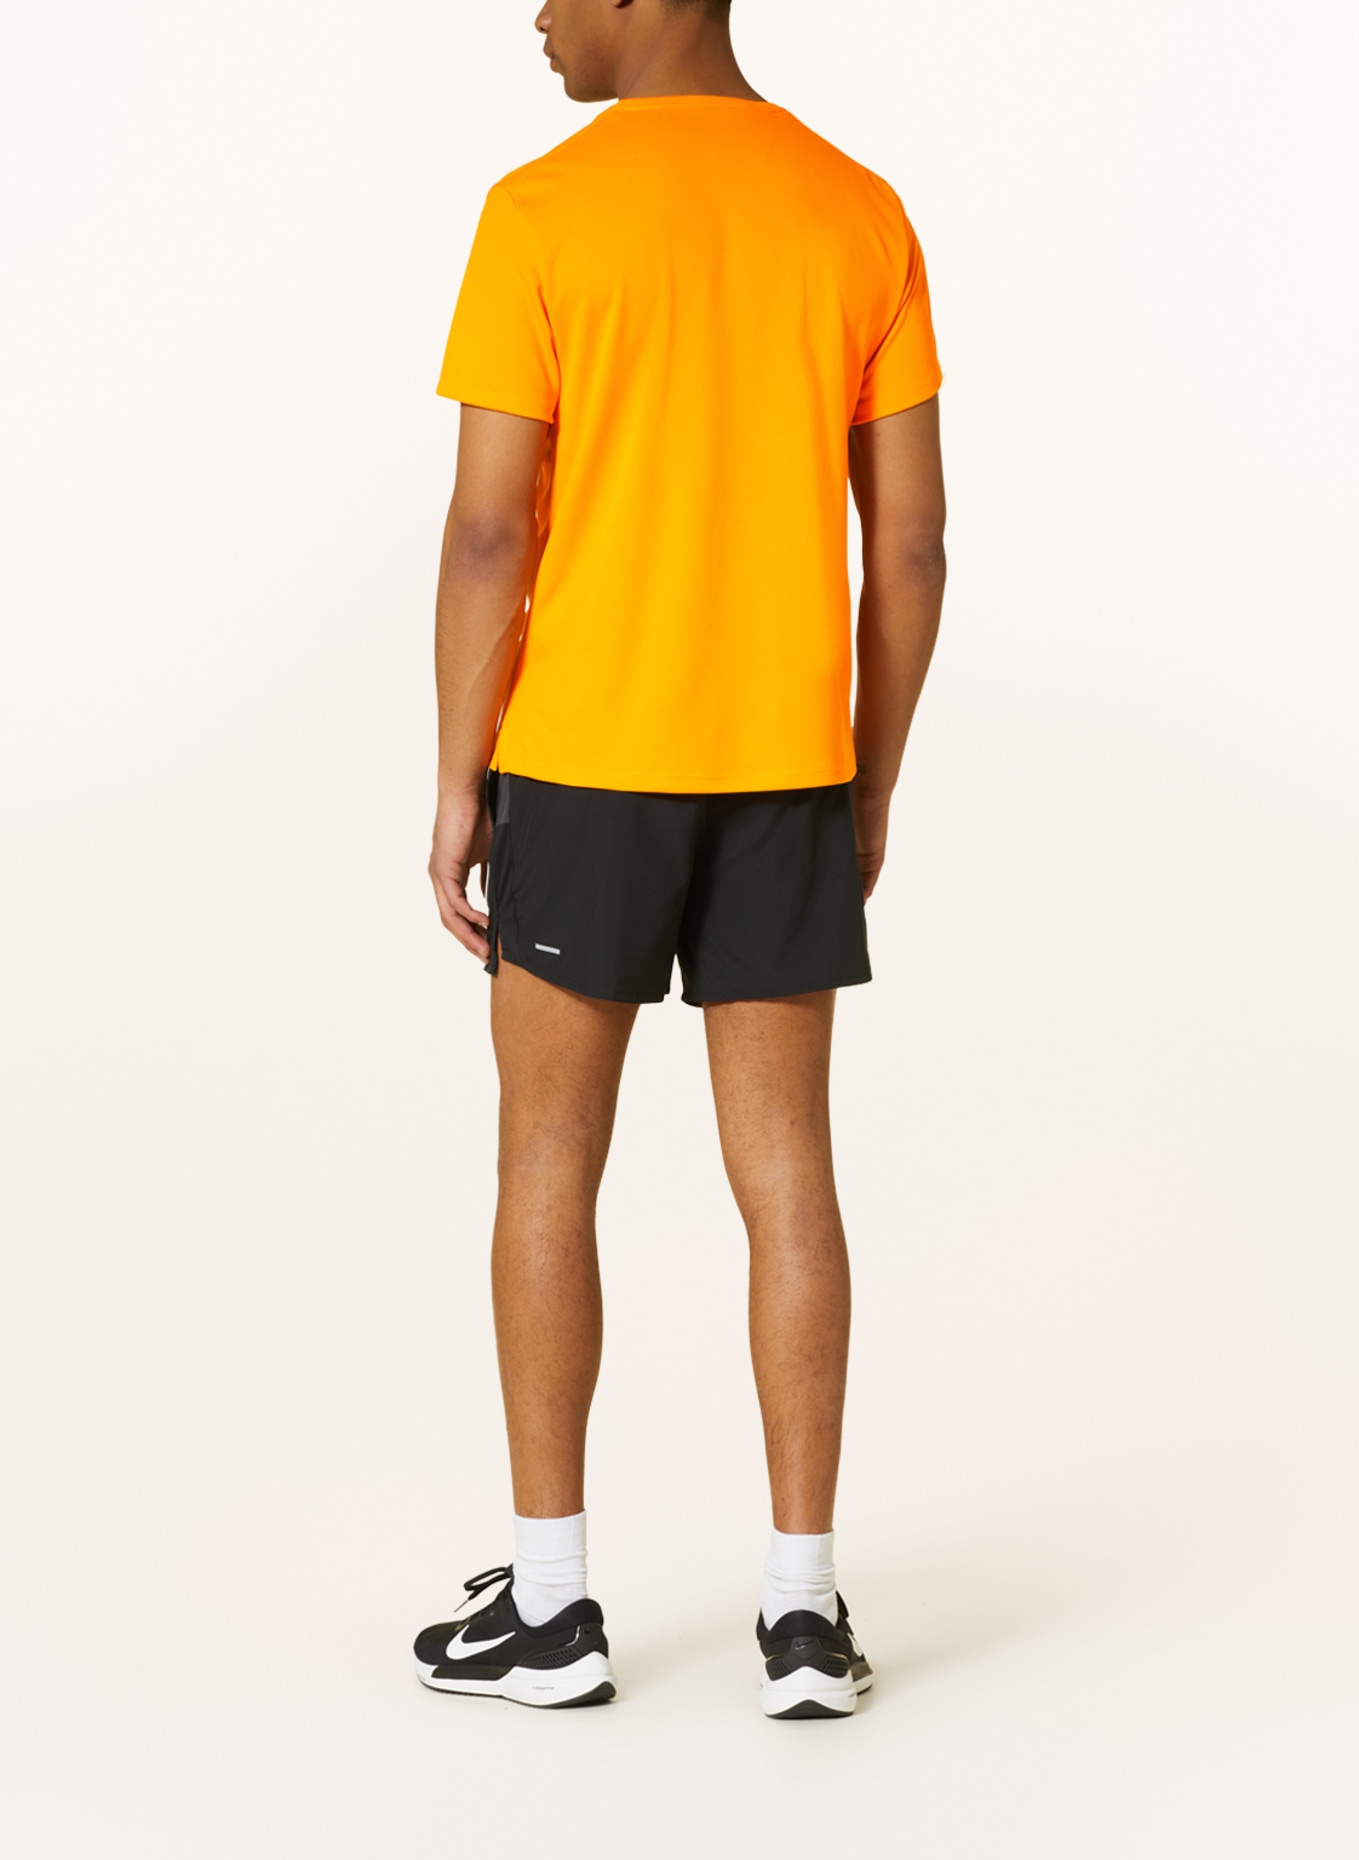 Nike Running shirt DRI-FIT RUN DIVISION MILER, Color: NEON ORANGE (Image 3)